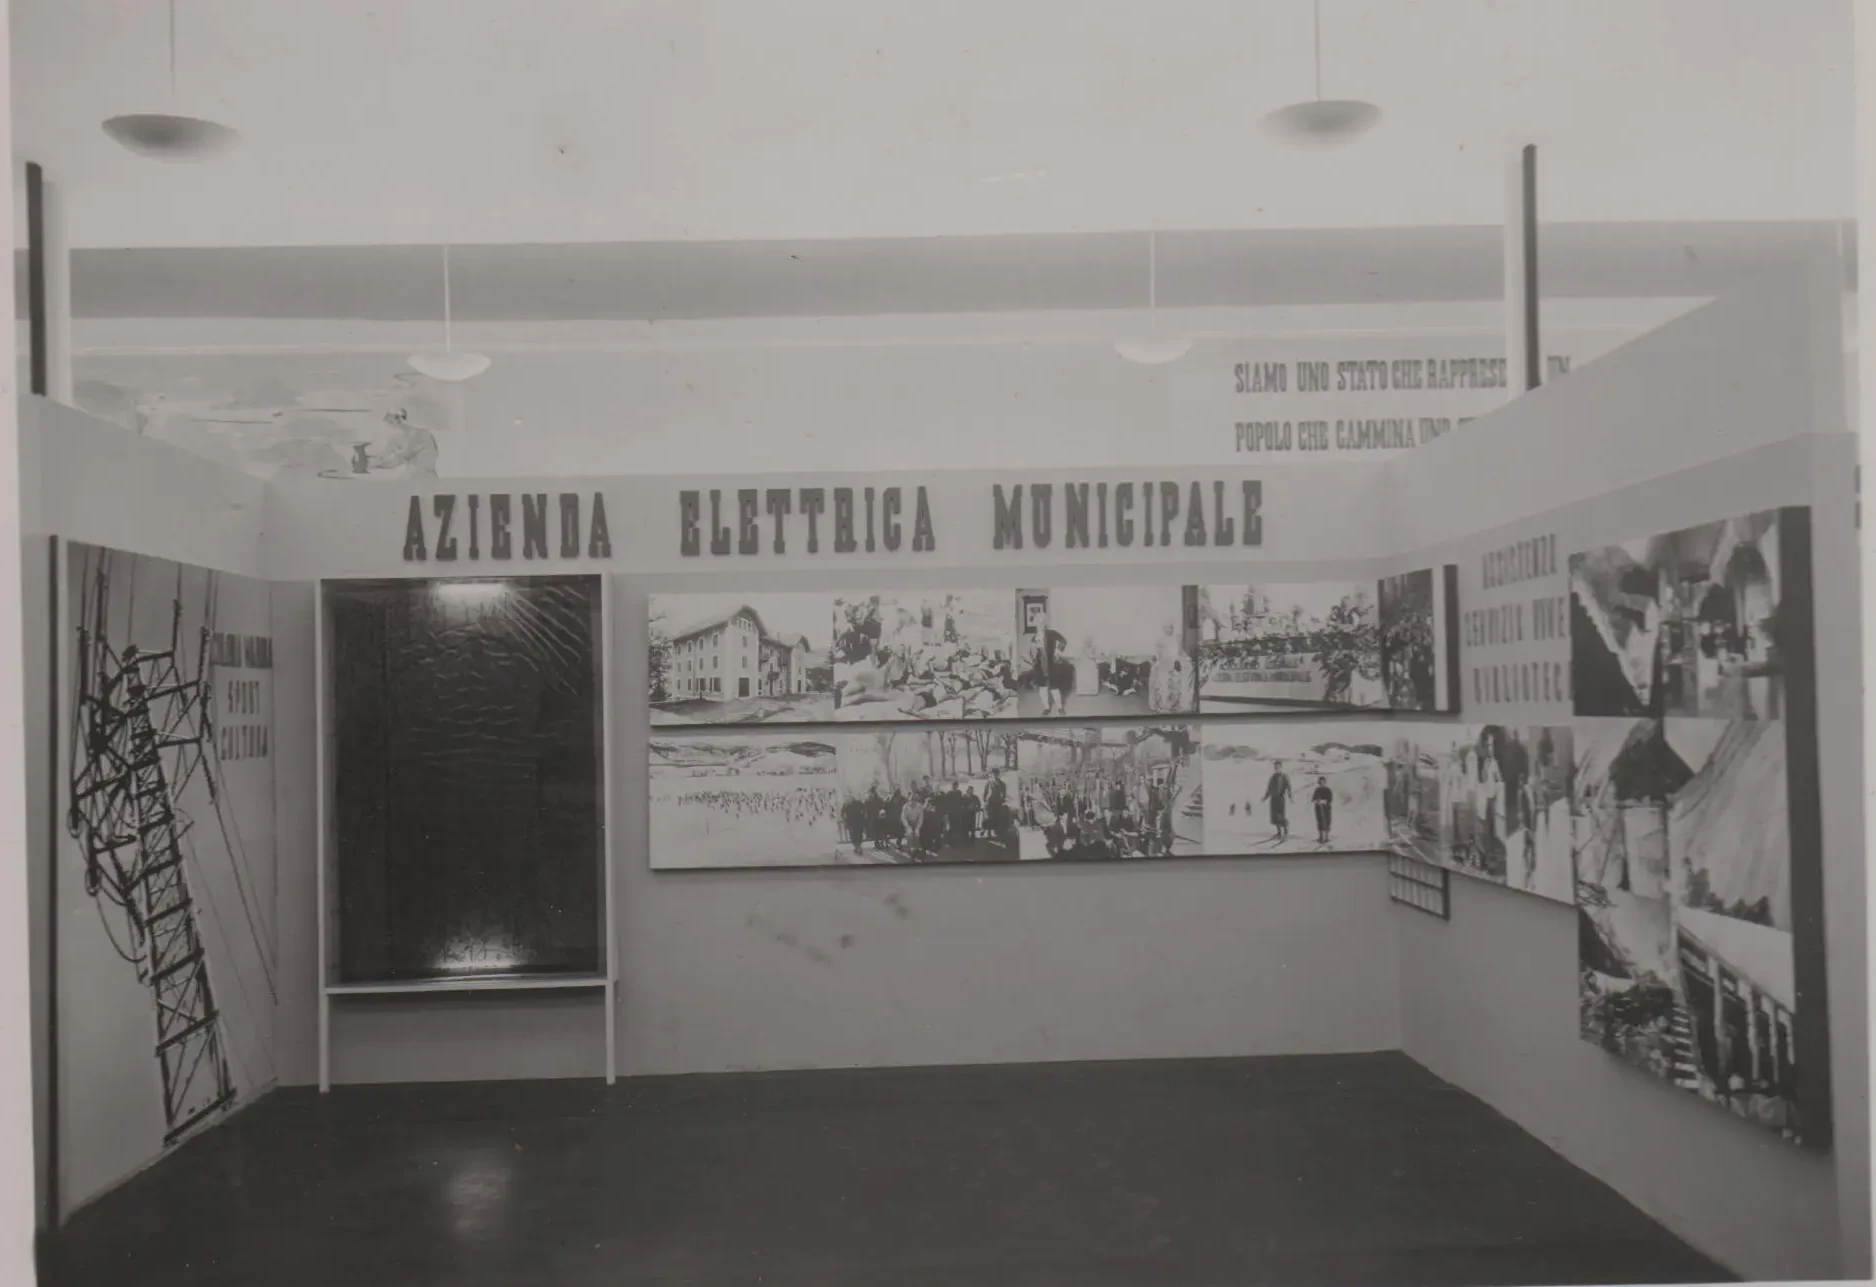 Mostra dopolavoro 1938